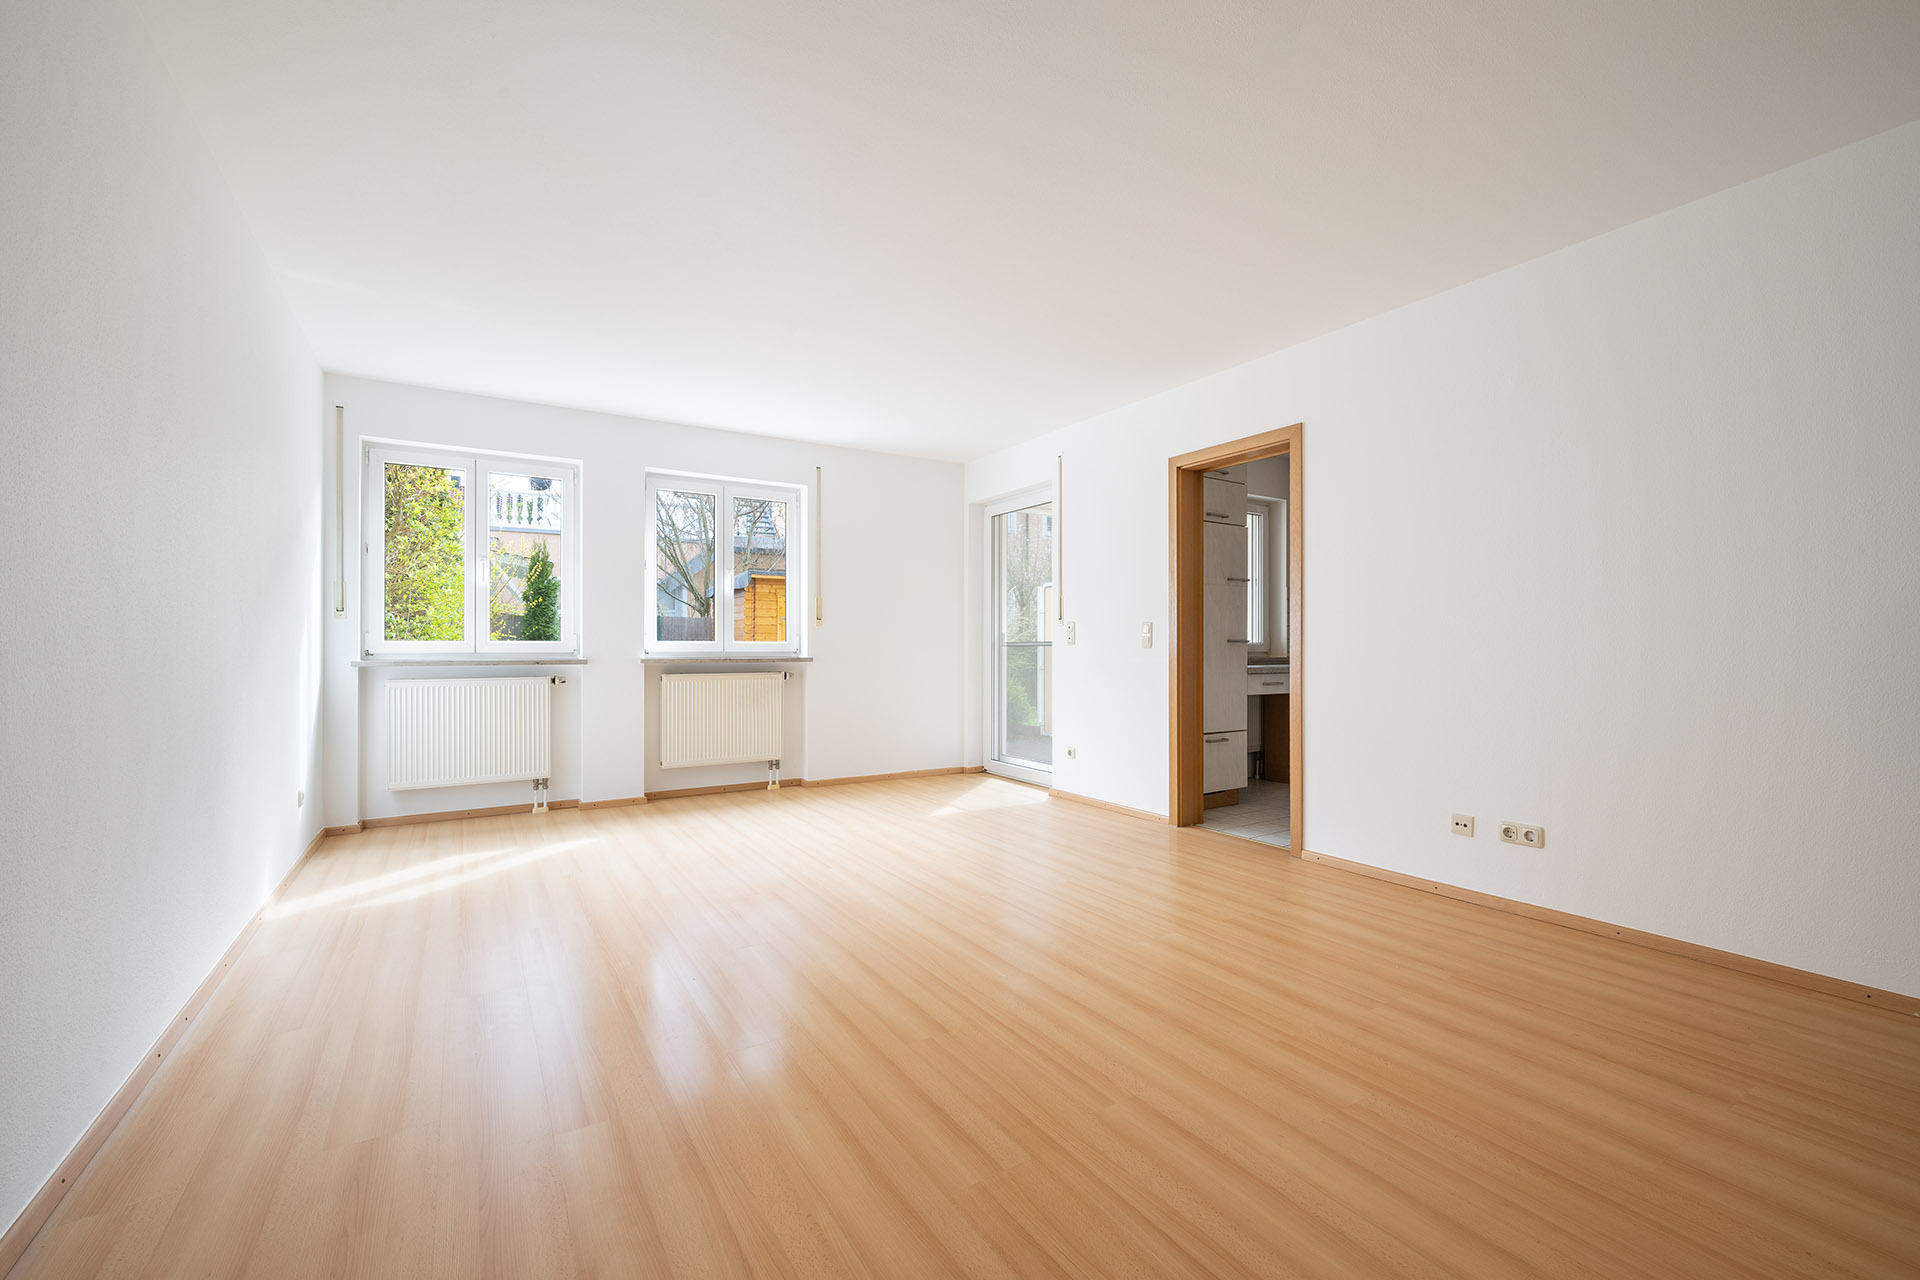 Zauberhafte 3-Zimmer Gartenwohnung in Erding/Langengeisling - Wohn_Essbereich mit Zugang zur Küche